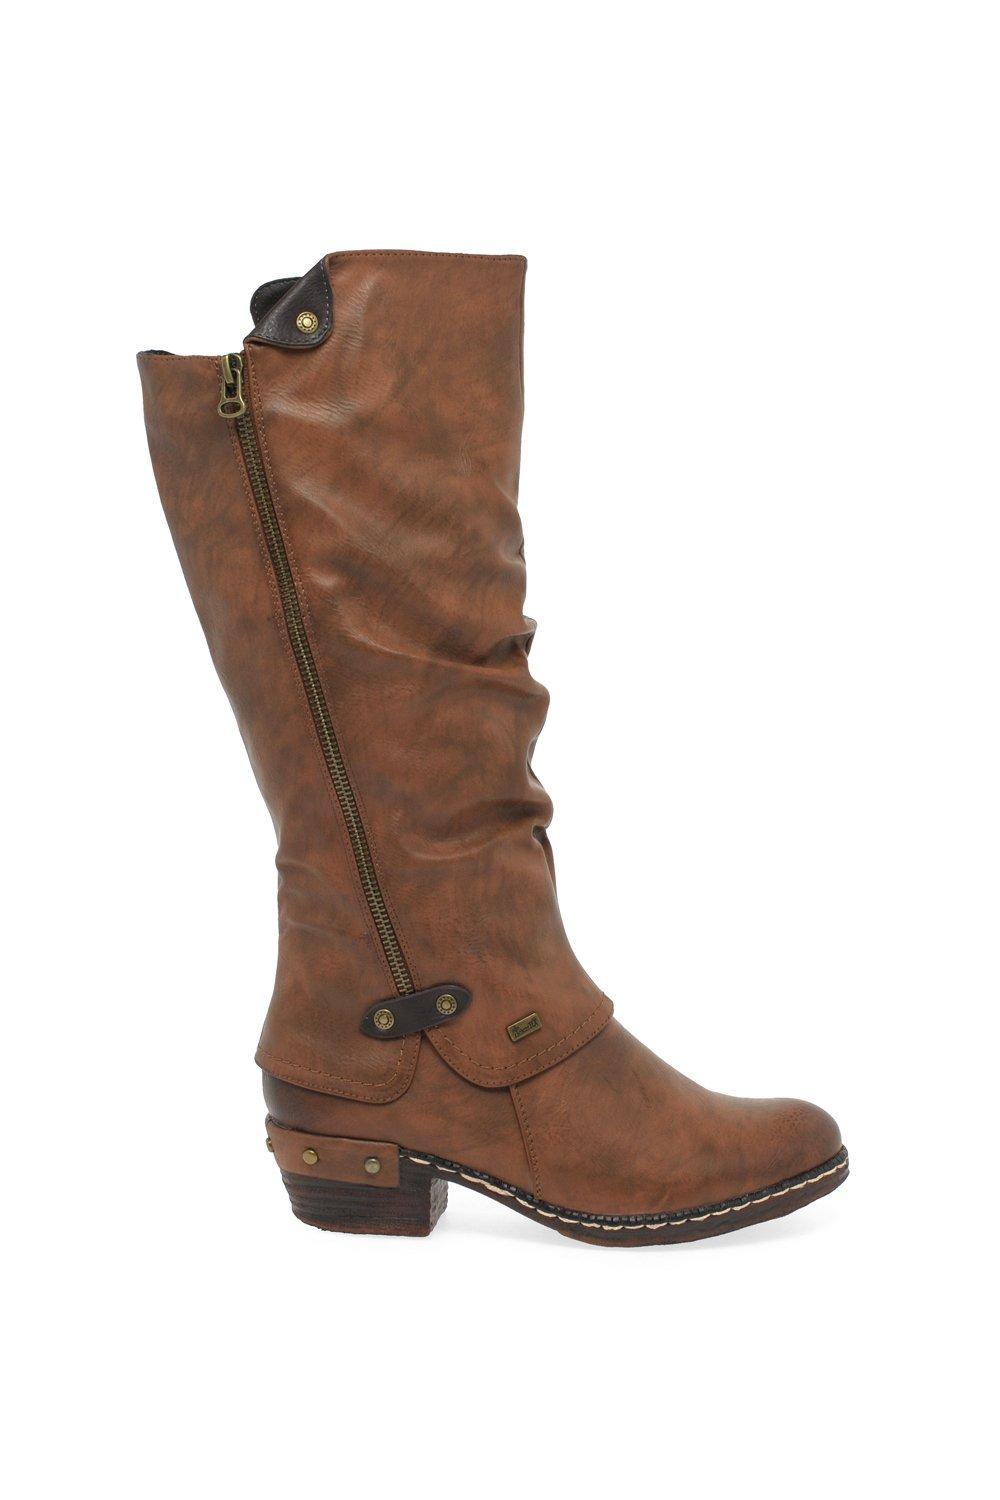 Rieker Women's 'Sierra' Long Boots|Size: 6.5|tan